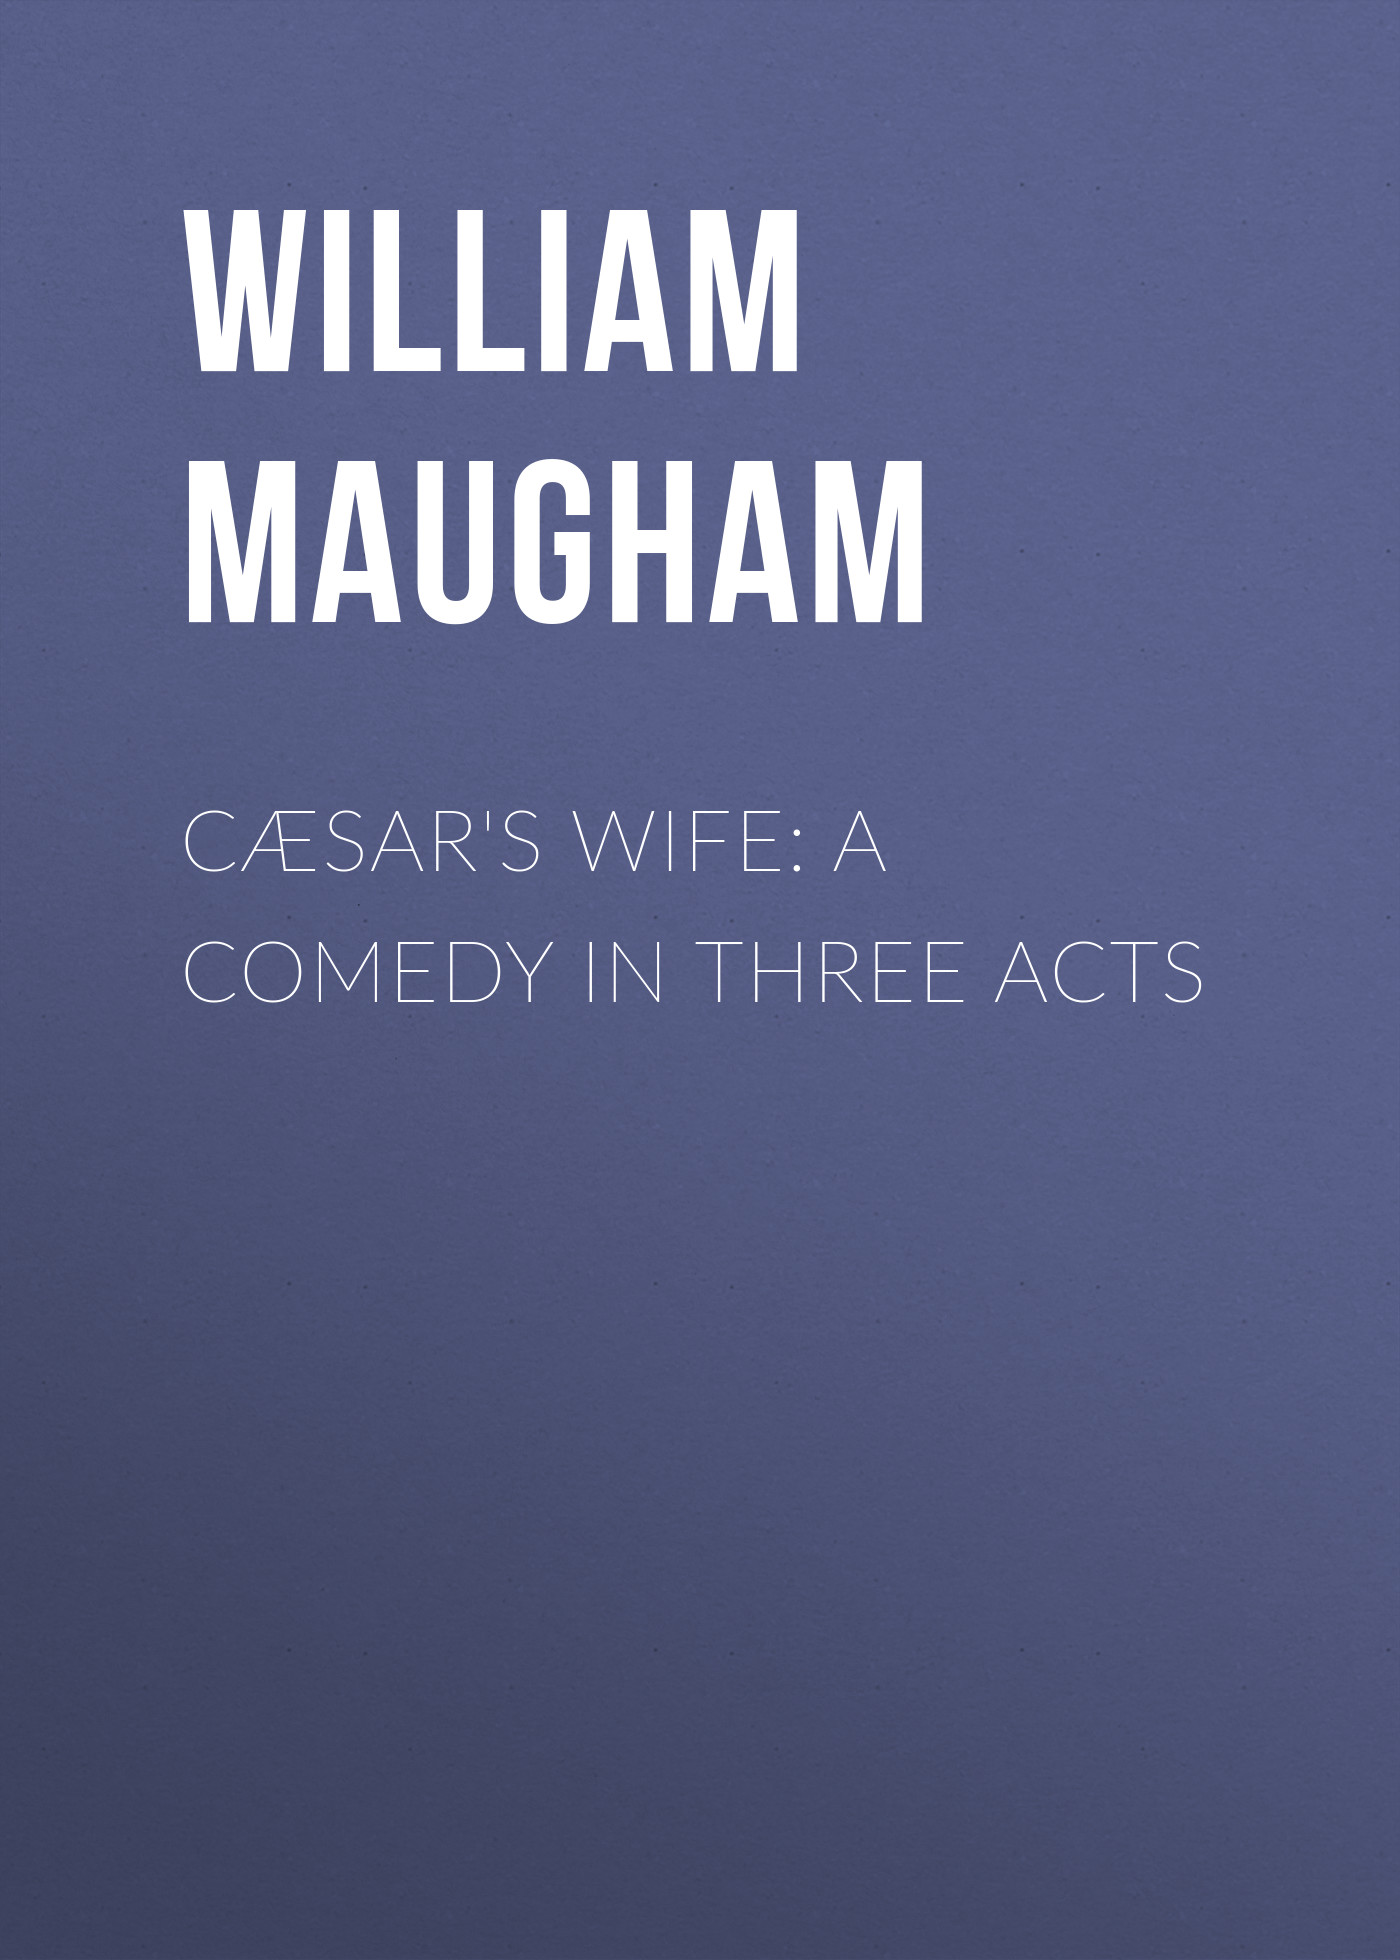 Книга Cæsar's Wife: A Comedy in Three Acts из серии , созданная William Maugham, может относится к жанру Зарубежная классика, Зарубежная драматургия. Стоимость электронной книги Cæsar's Wife: A Comedy in Three Acts с идентификатором 23145139 составляет 5.99 руб.